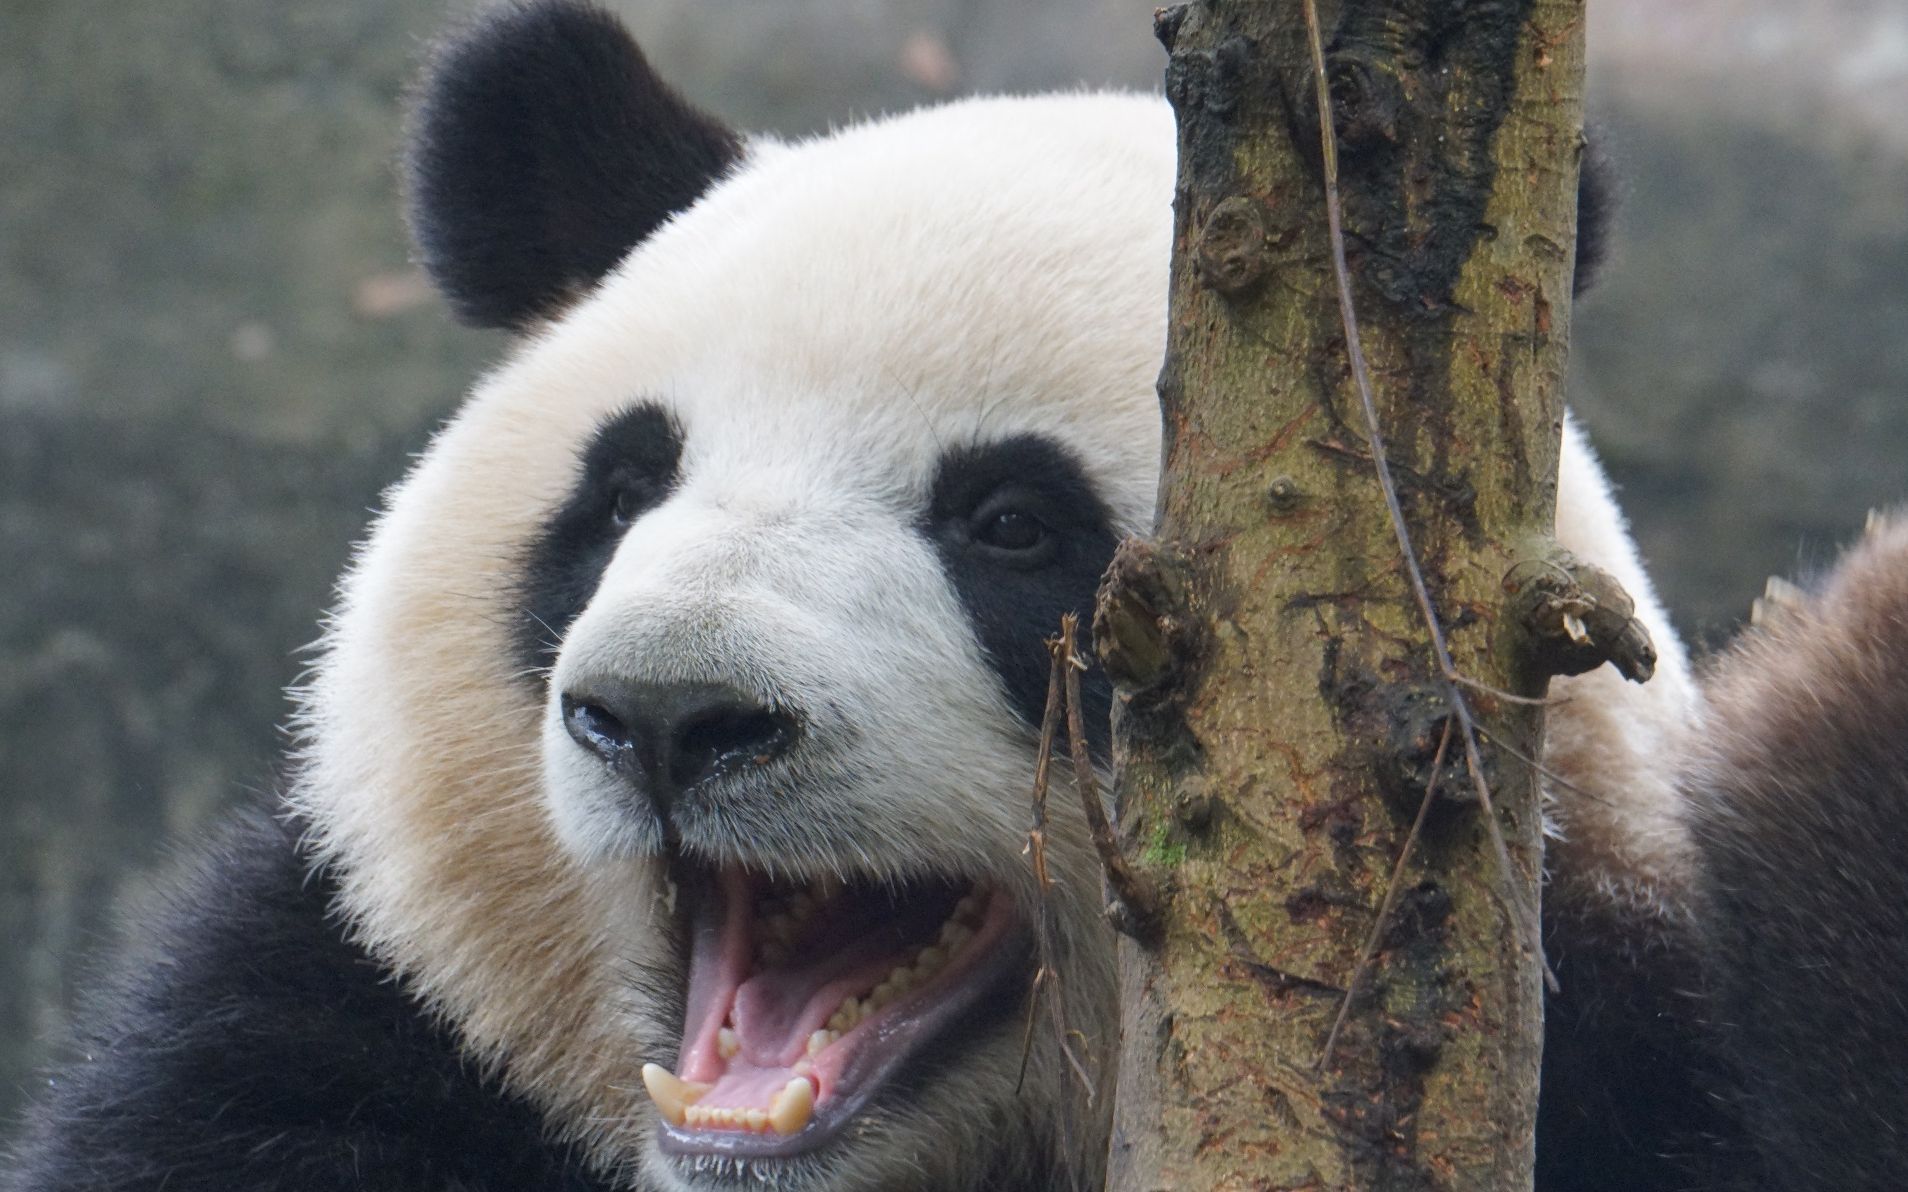 大熊猫凶猛图片